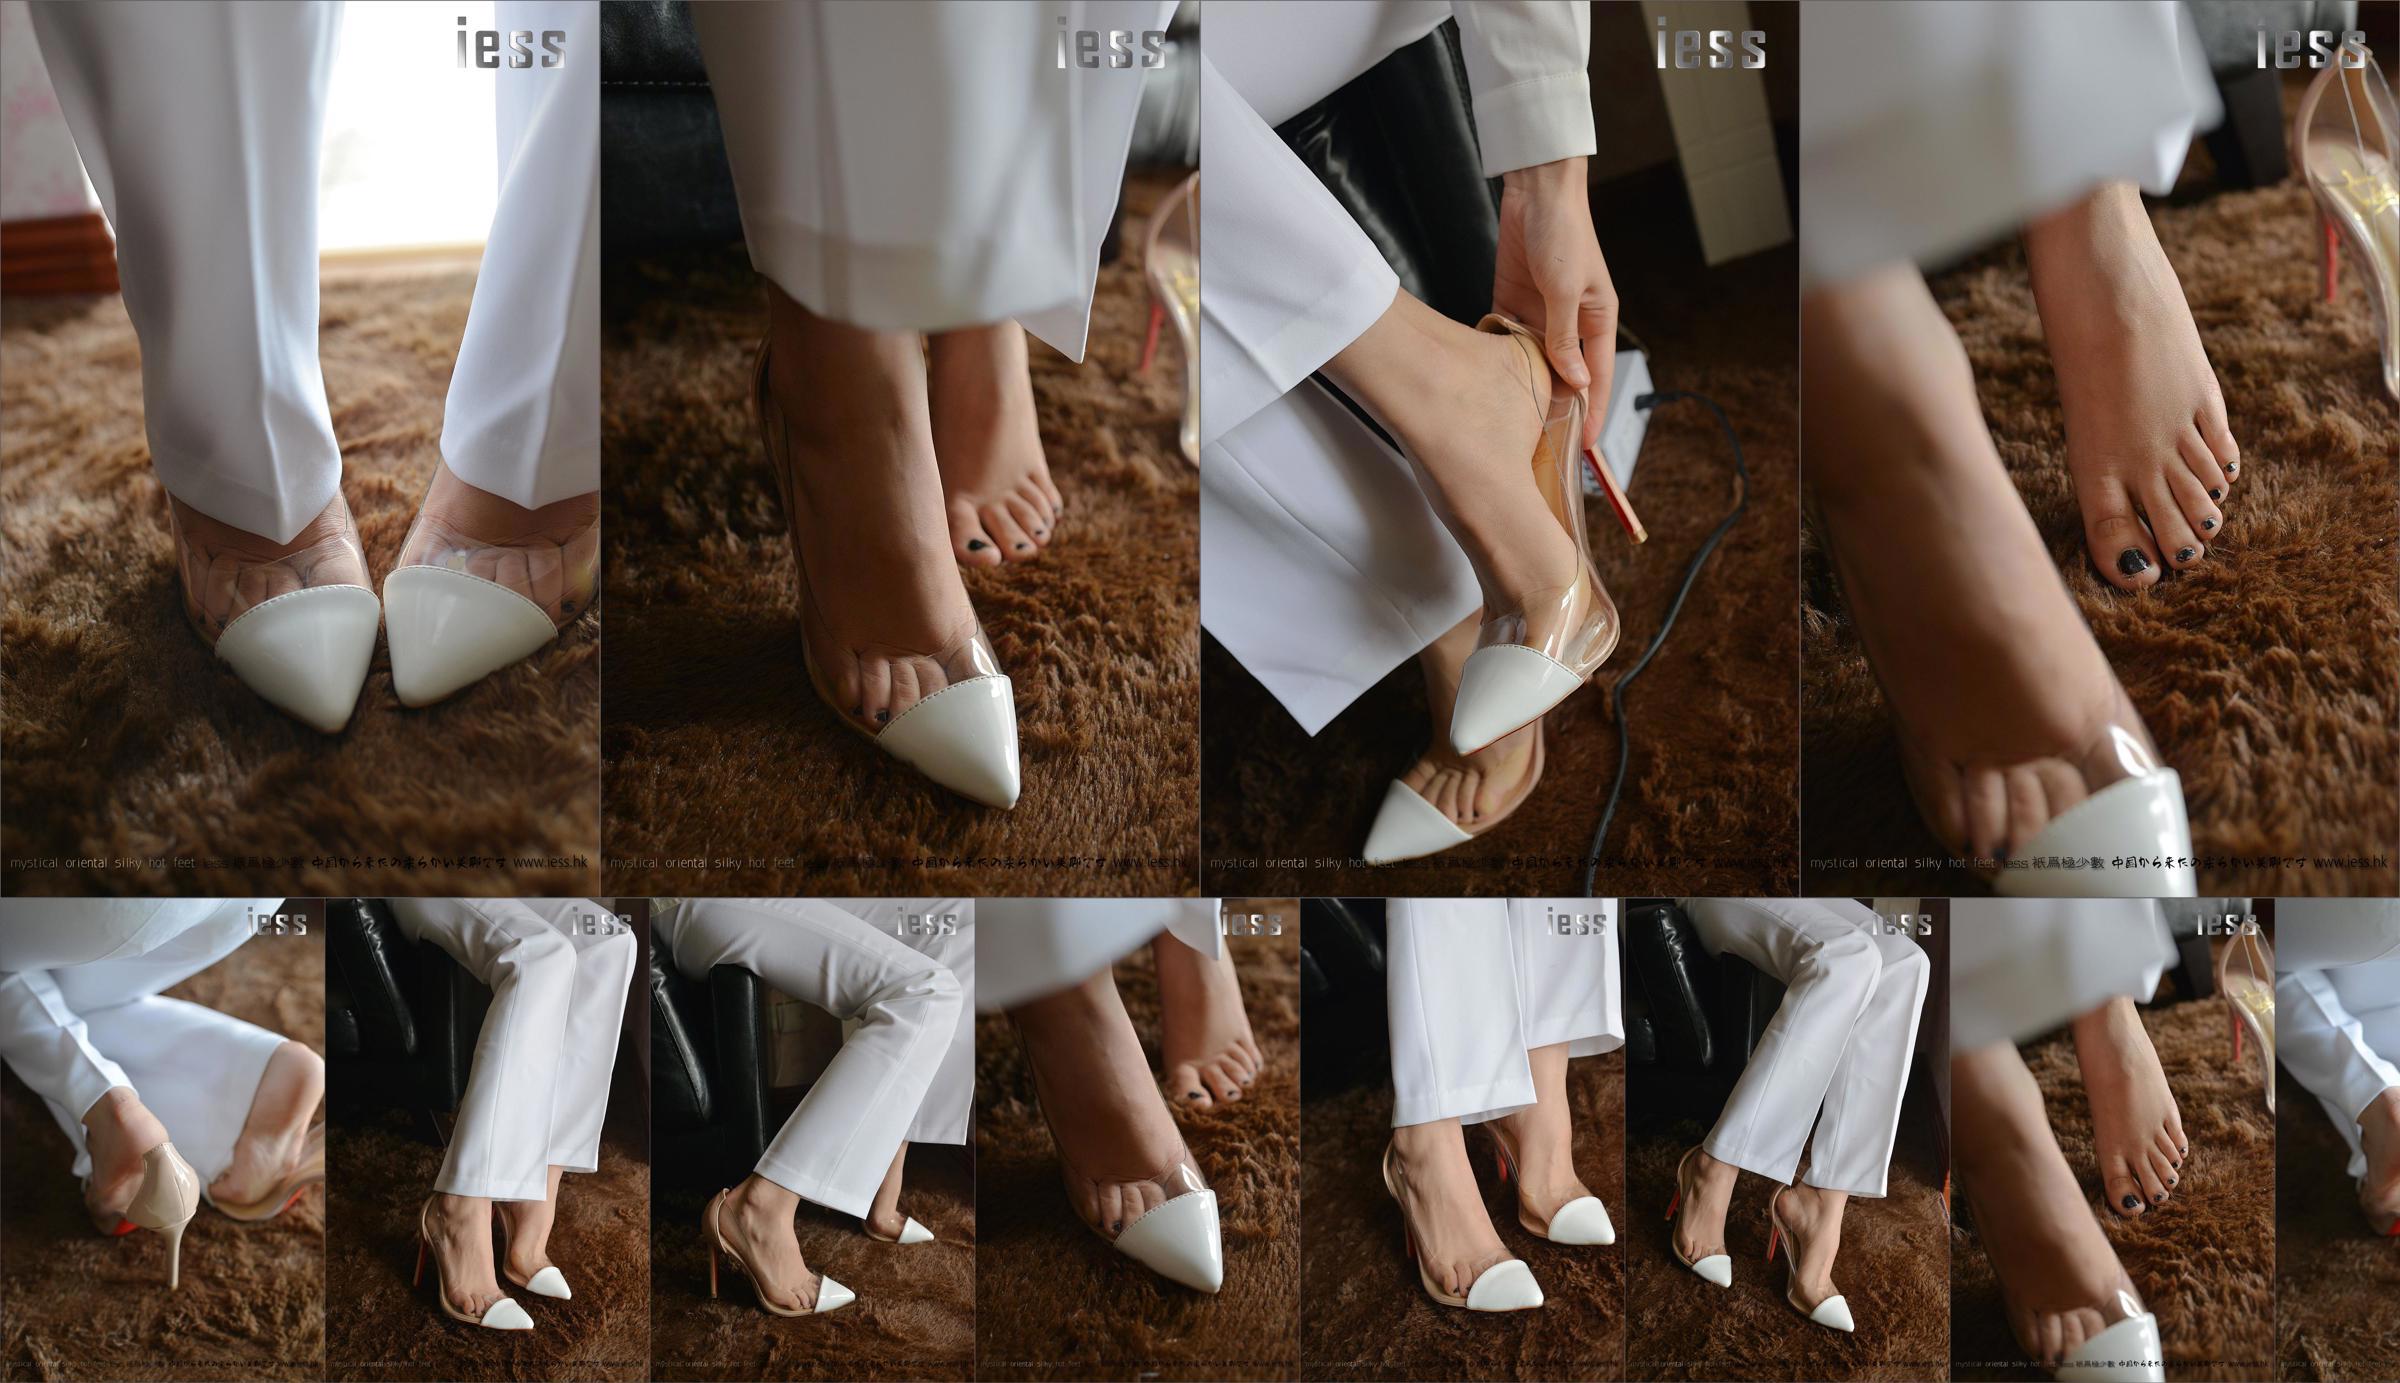 Silky Foot Bento 058 Hồi hộp "Bộ sưu tập-Giày cao gót chân trần" [IESS Wei Si Fun Xiang] No.bac56c Trang 6